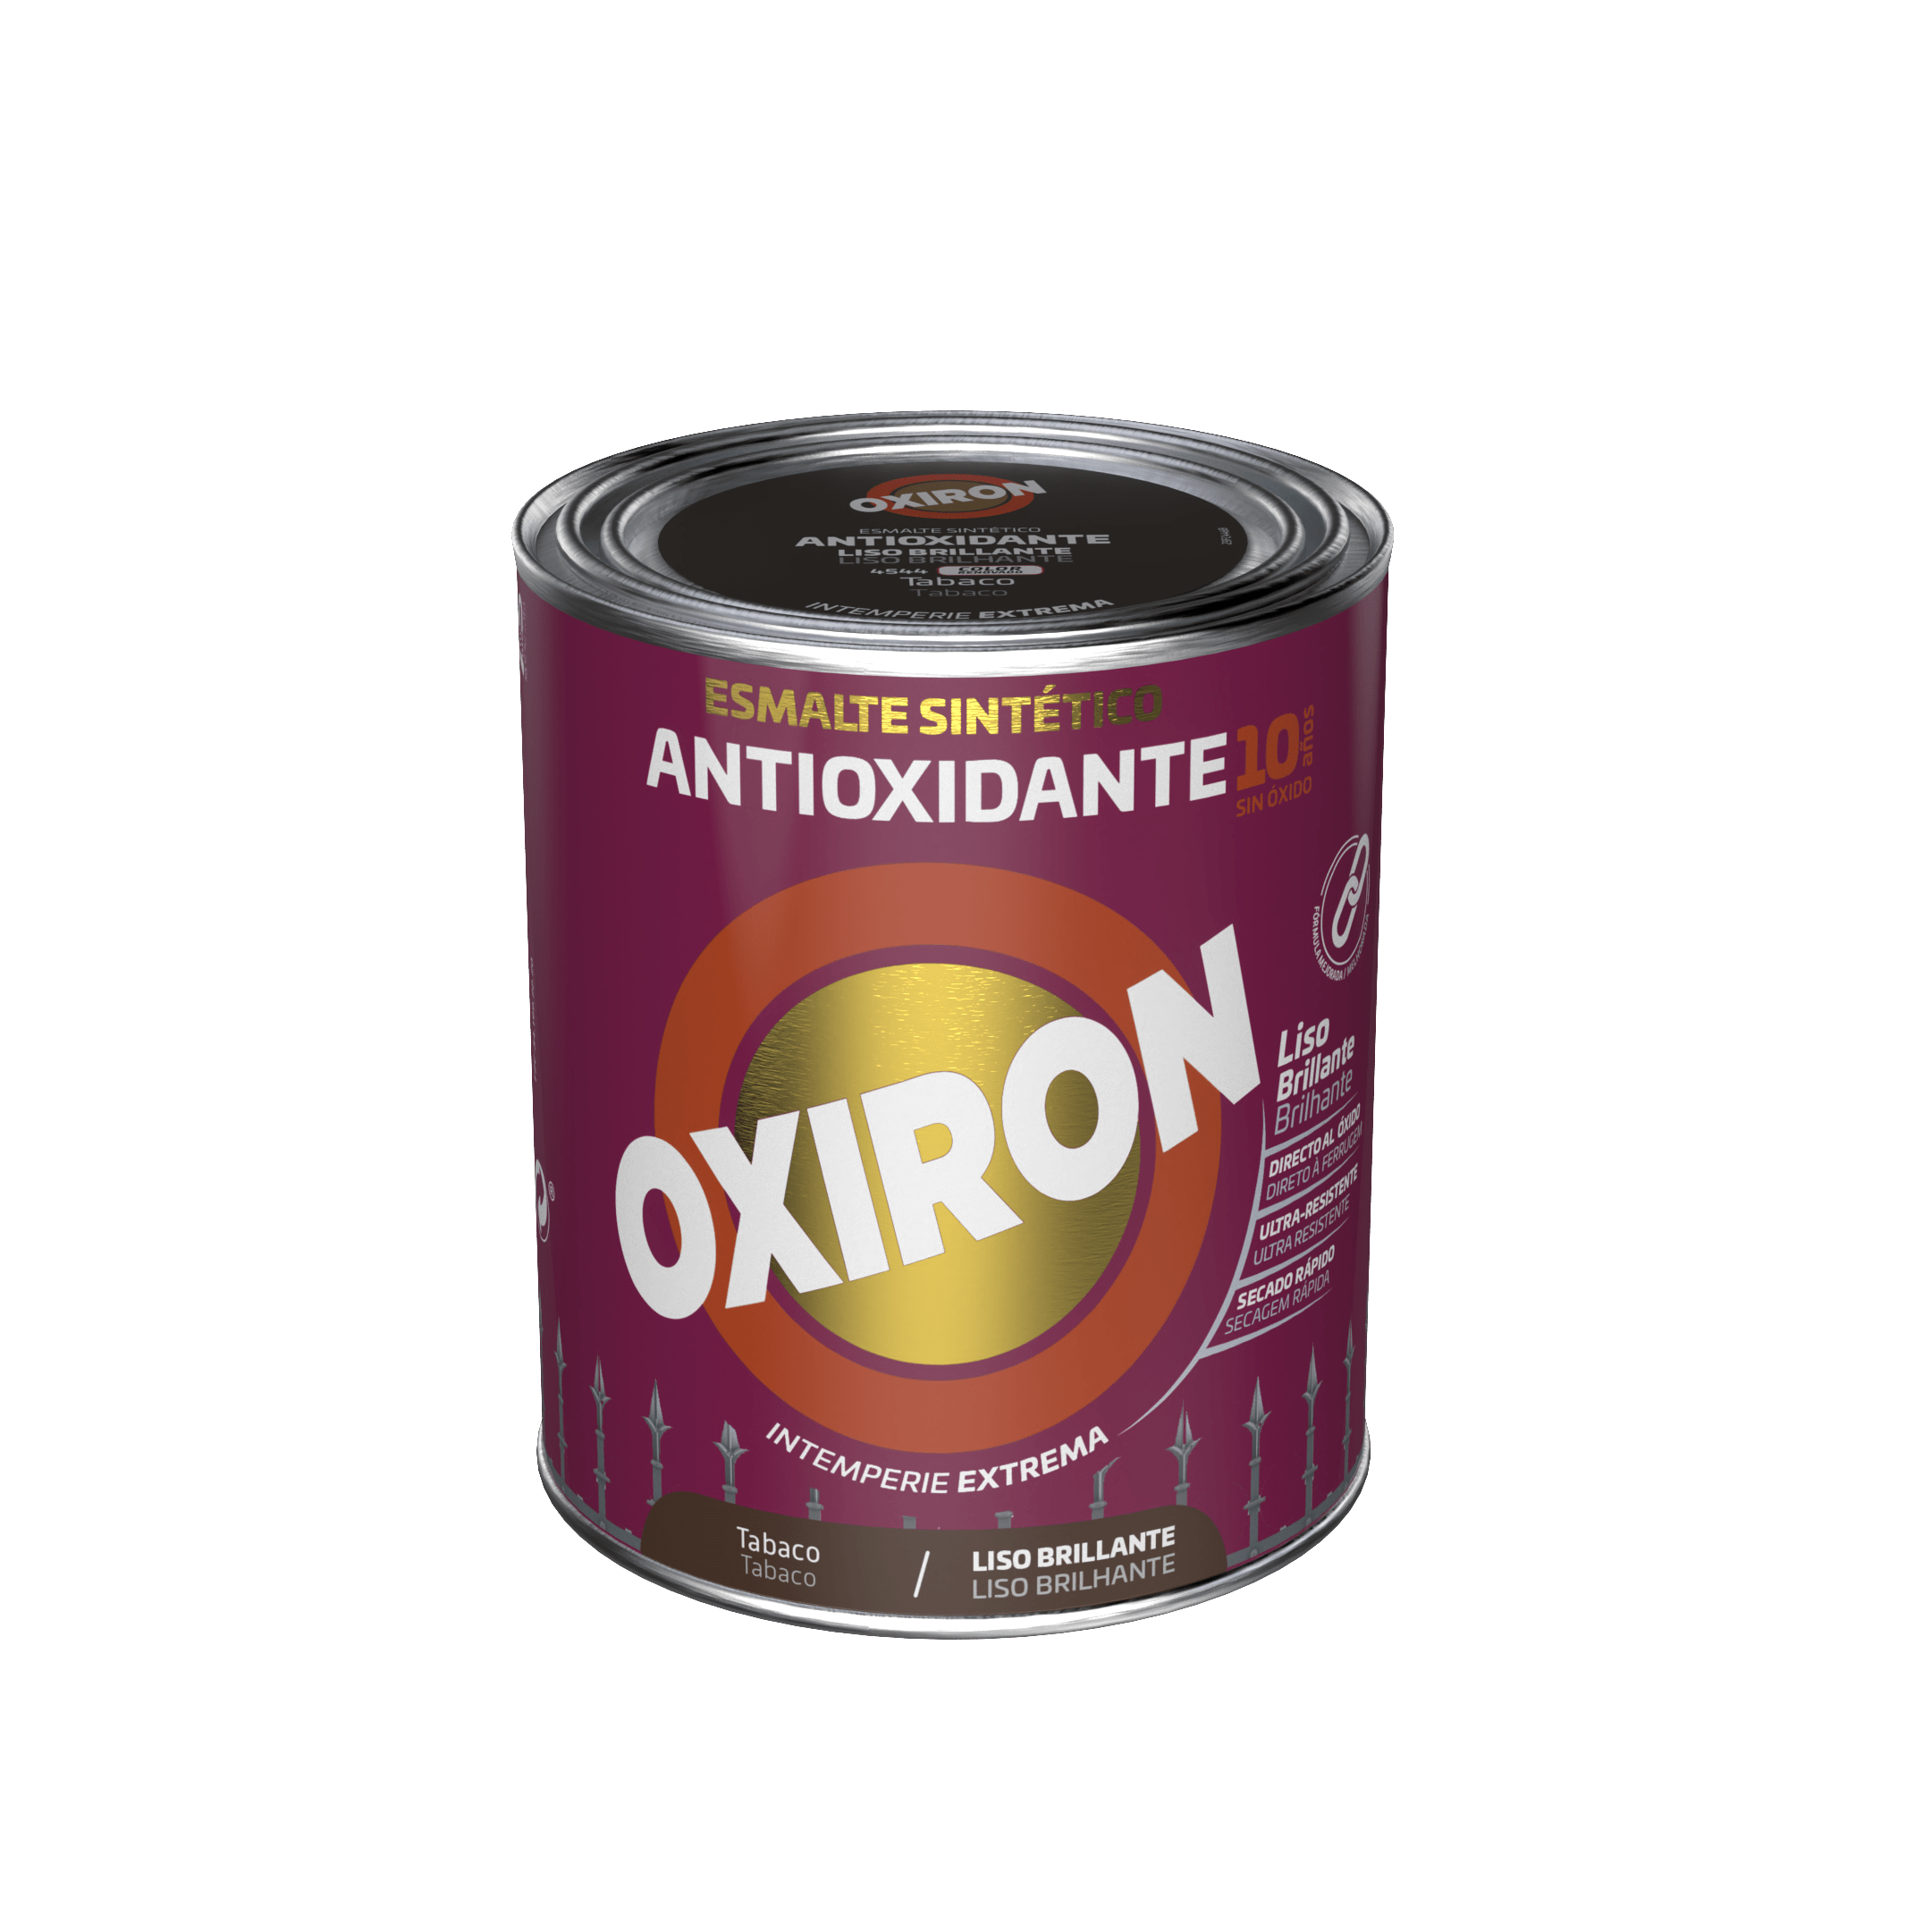 Oxiron Liso Esmalte Antioxidante Brillante